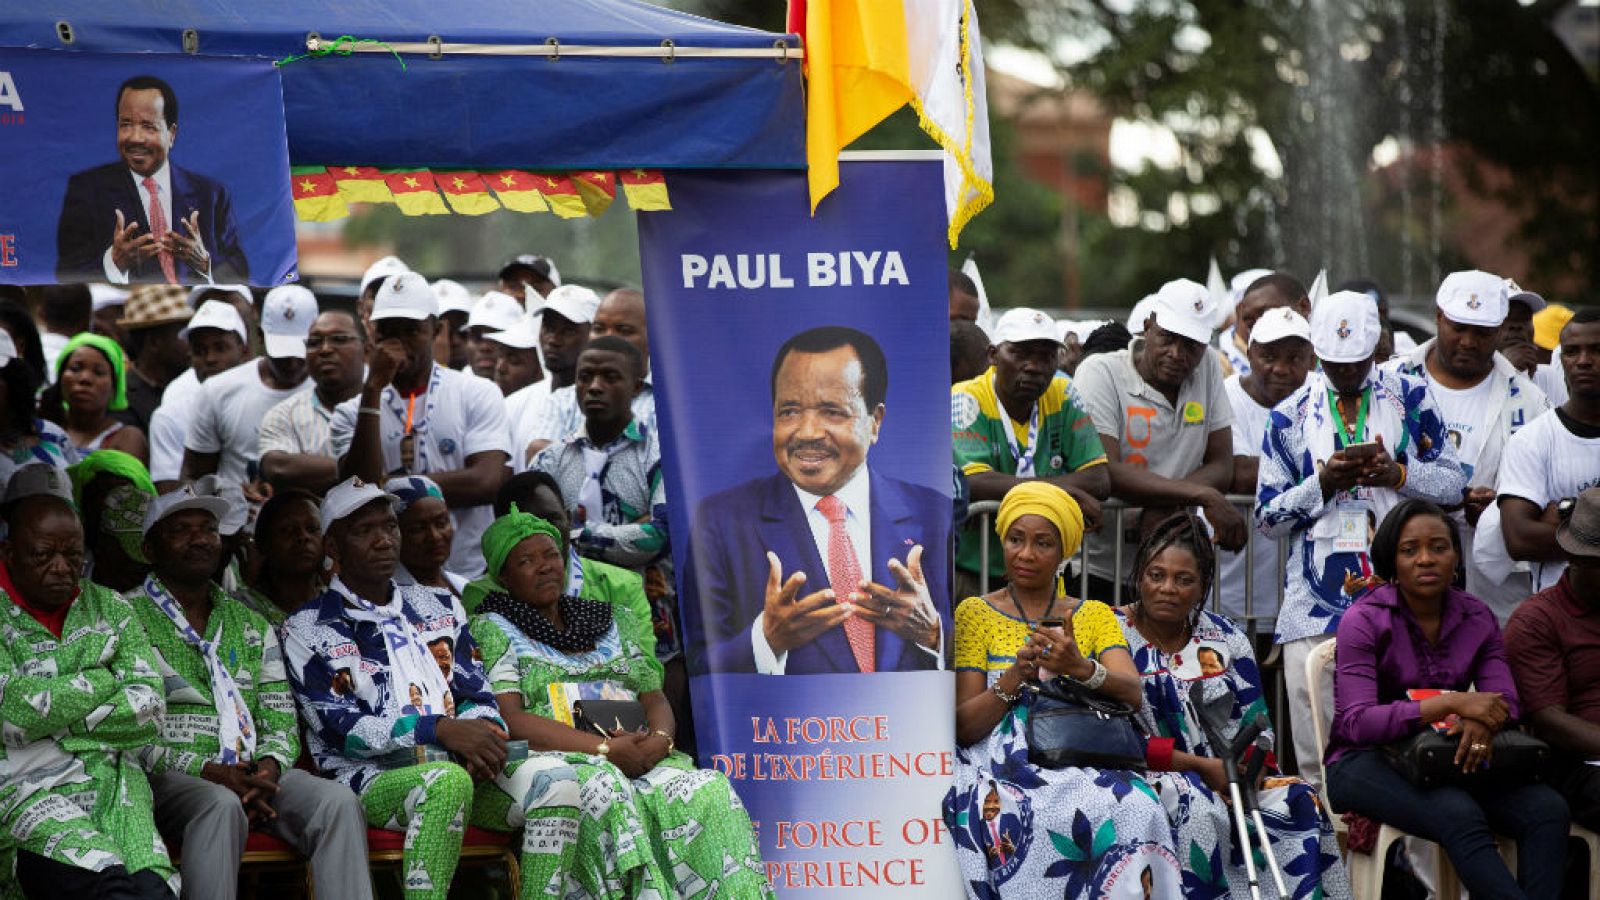  Cinco Continentes - Paul Biya busca revalidar su presidencia en Camerún este domingo - Escuchar ahora